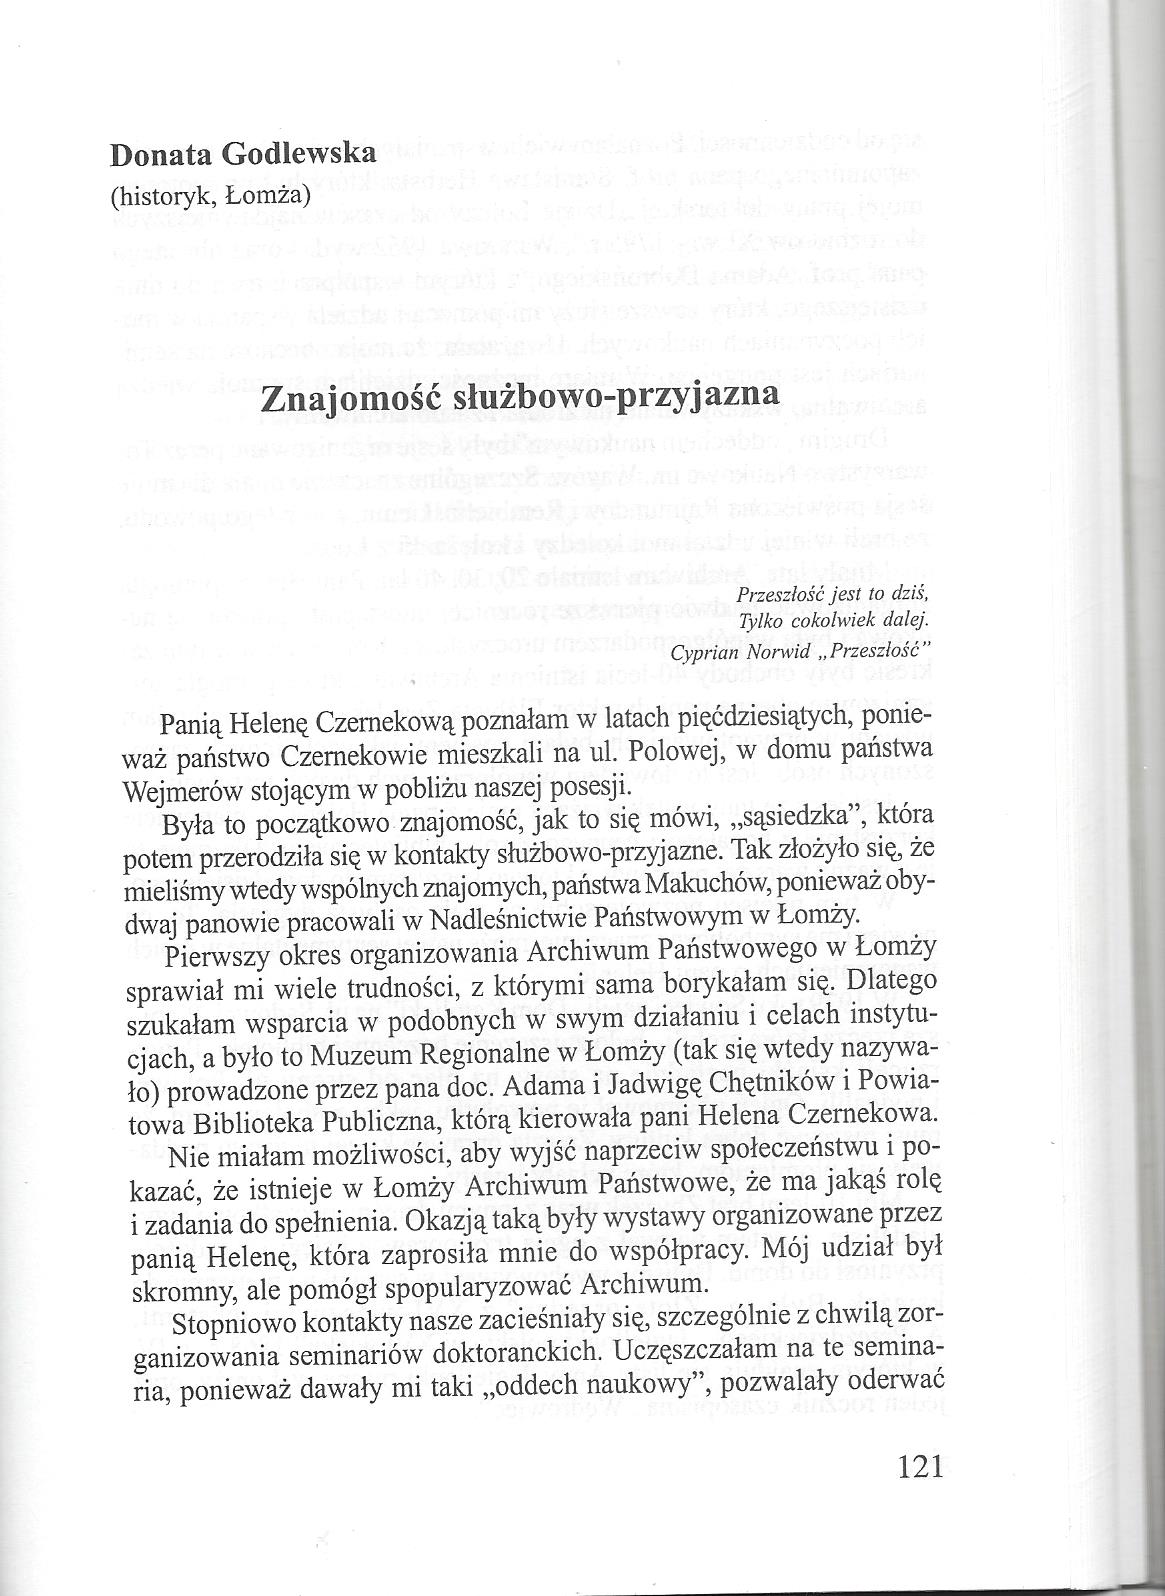 27. Janusz Gwardiak – „Pasjonatka Ziemi Łomżyńskiej”, Łomża 2002.